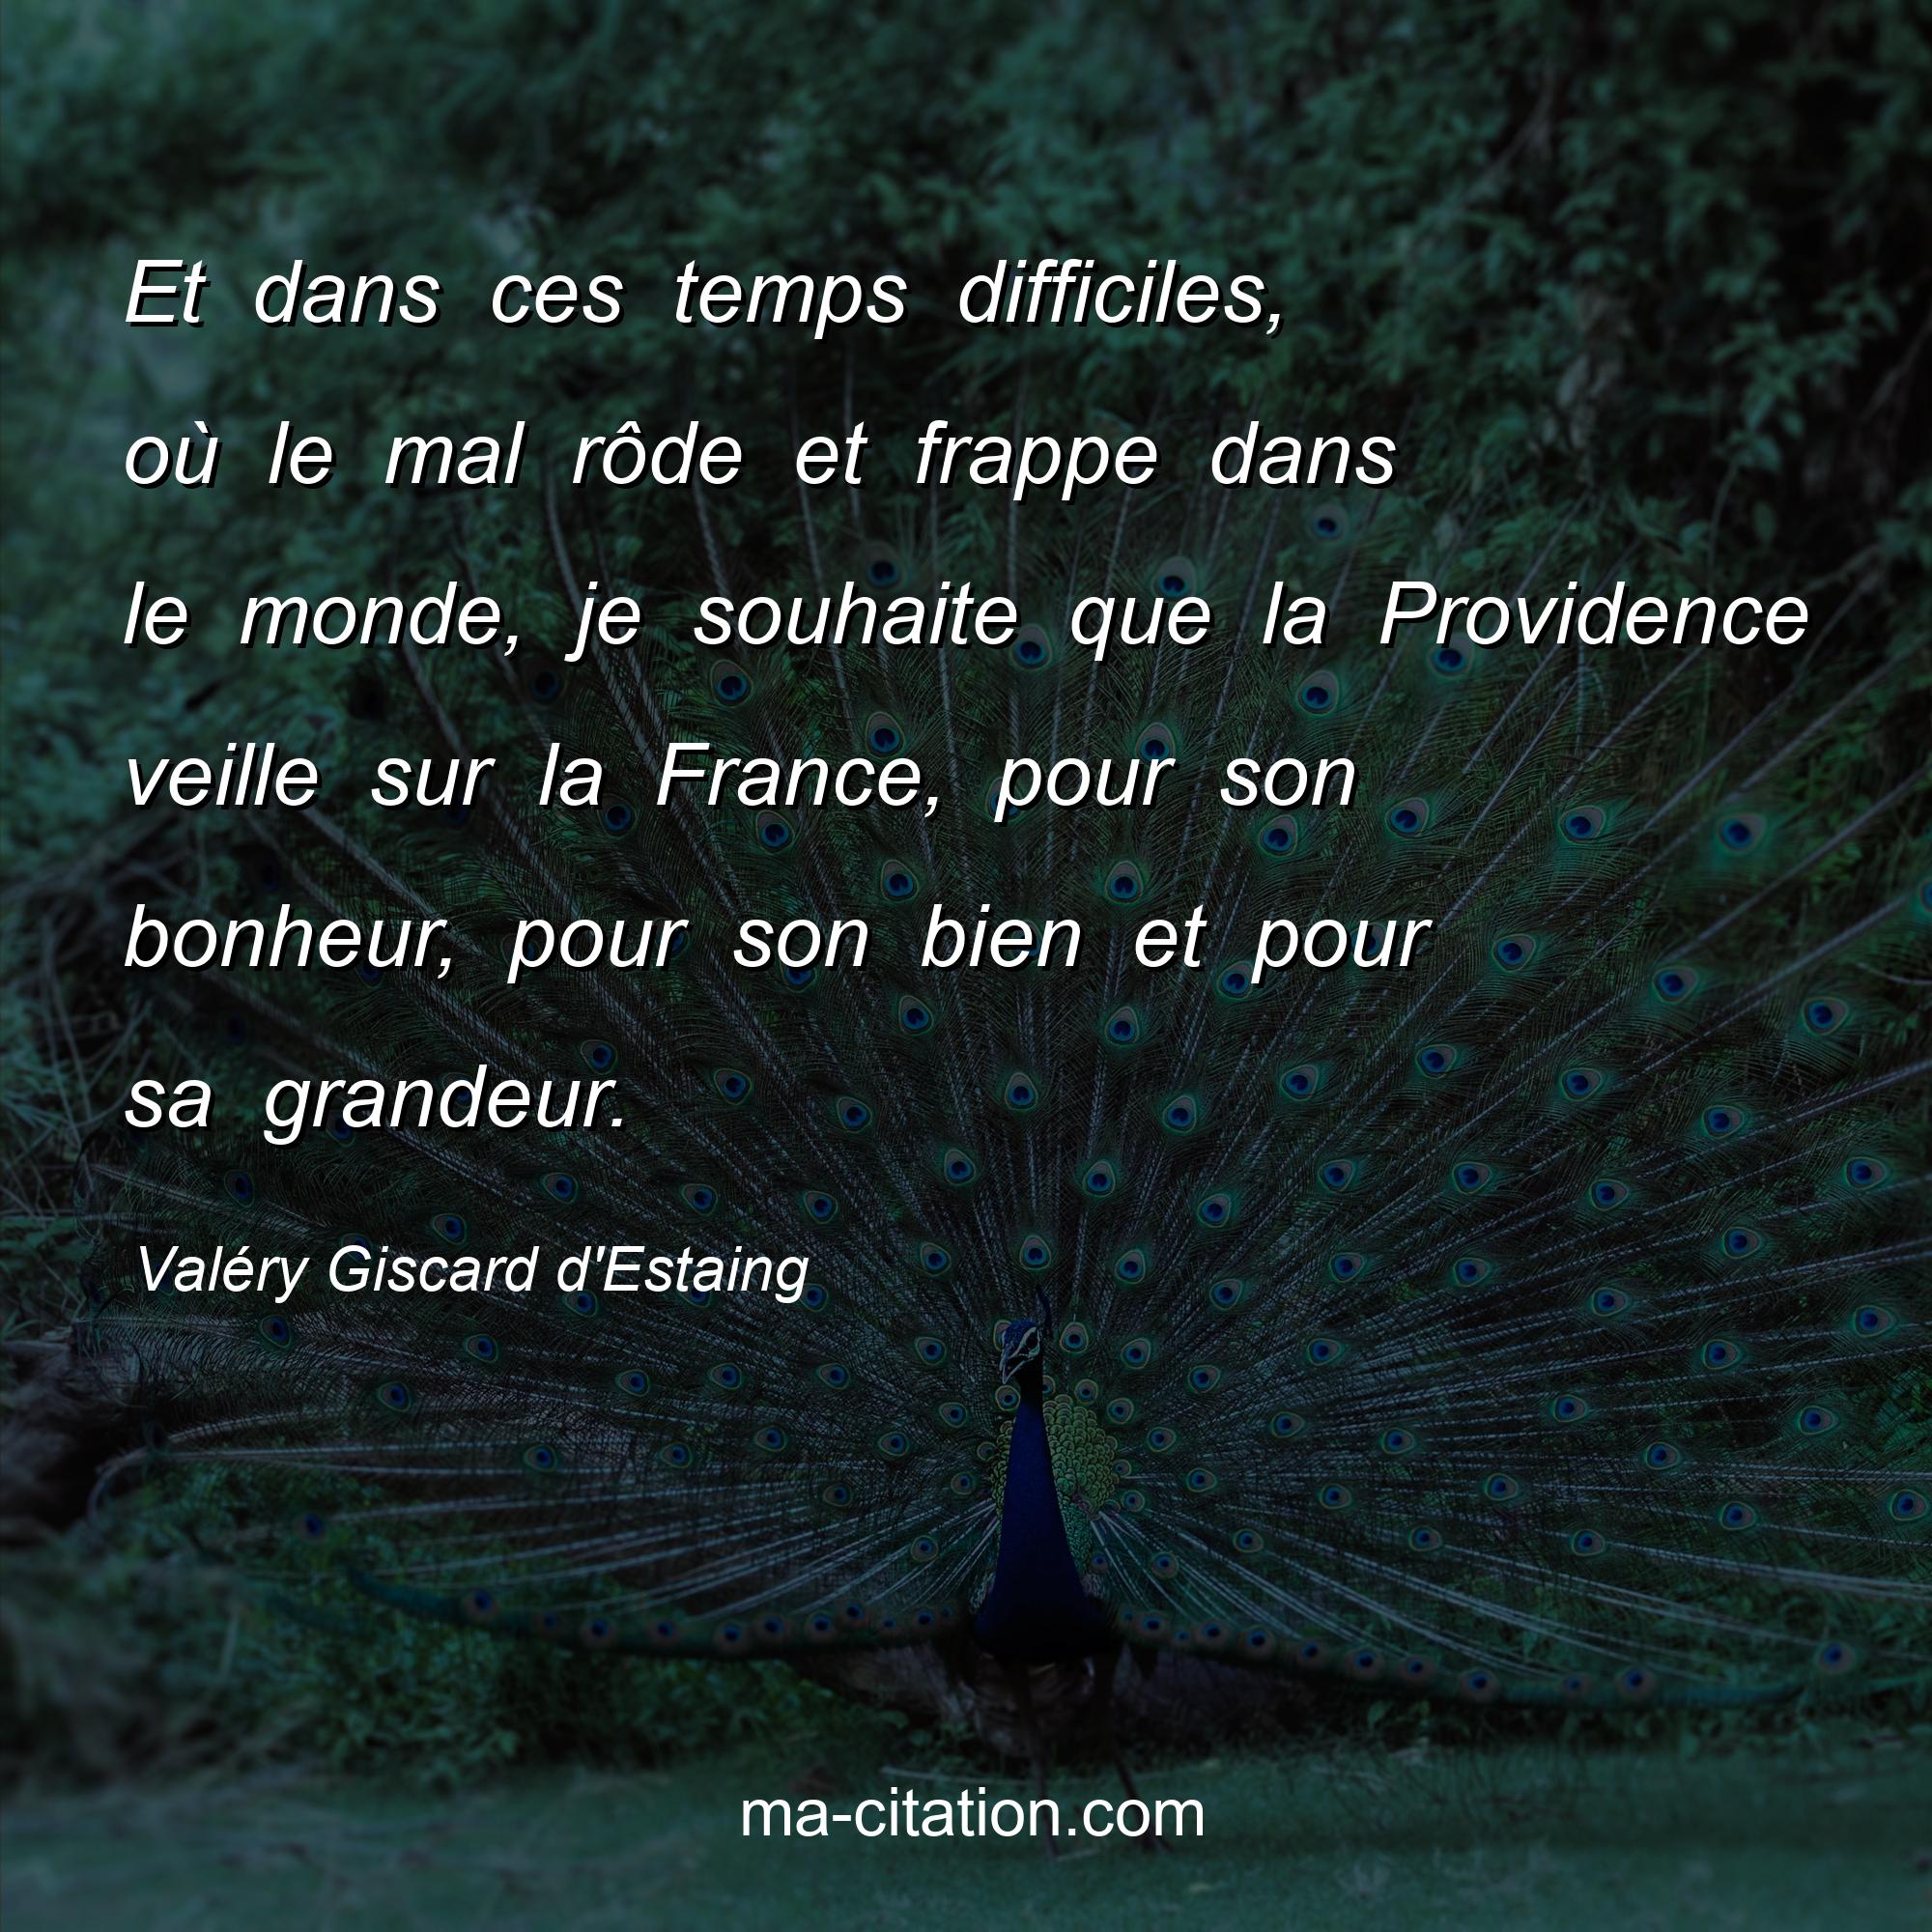 Valéry Giscard d'Estaing : Et dans ces temps difficiles, où le mal rôde et frappe dans le monde, je souhaite que la Providence veille sur la France, pour son bonheur, pour son bien et pour sa grandeur.